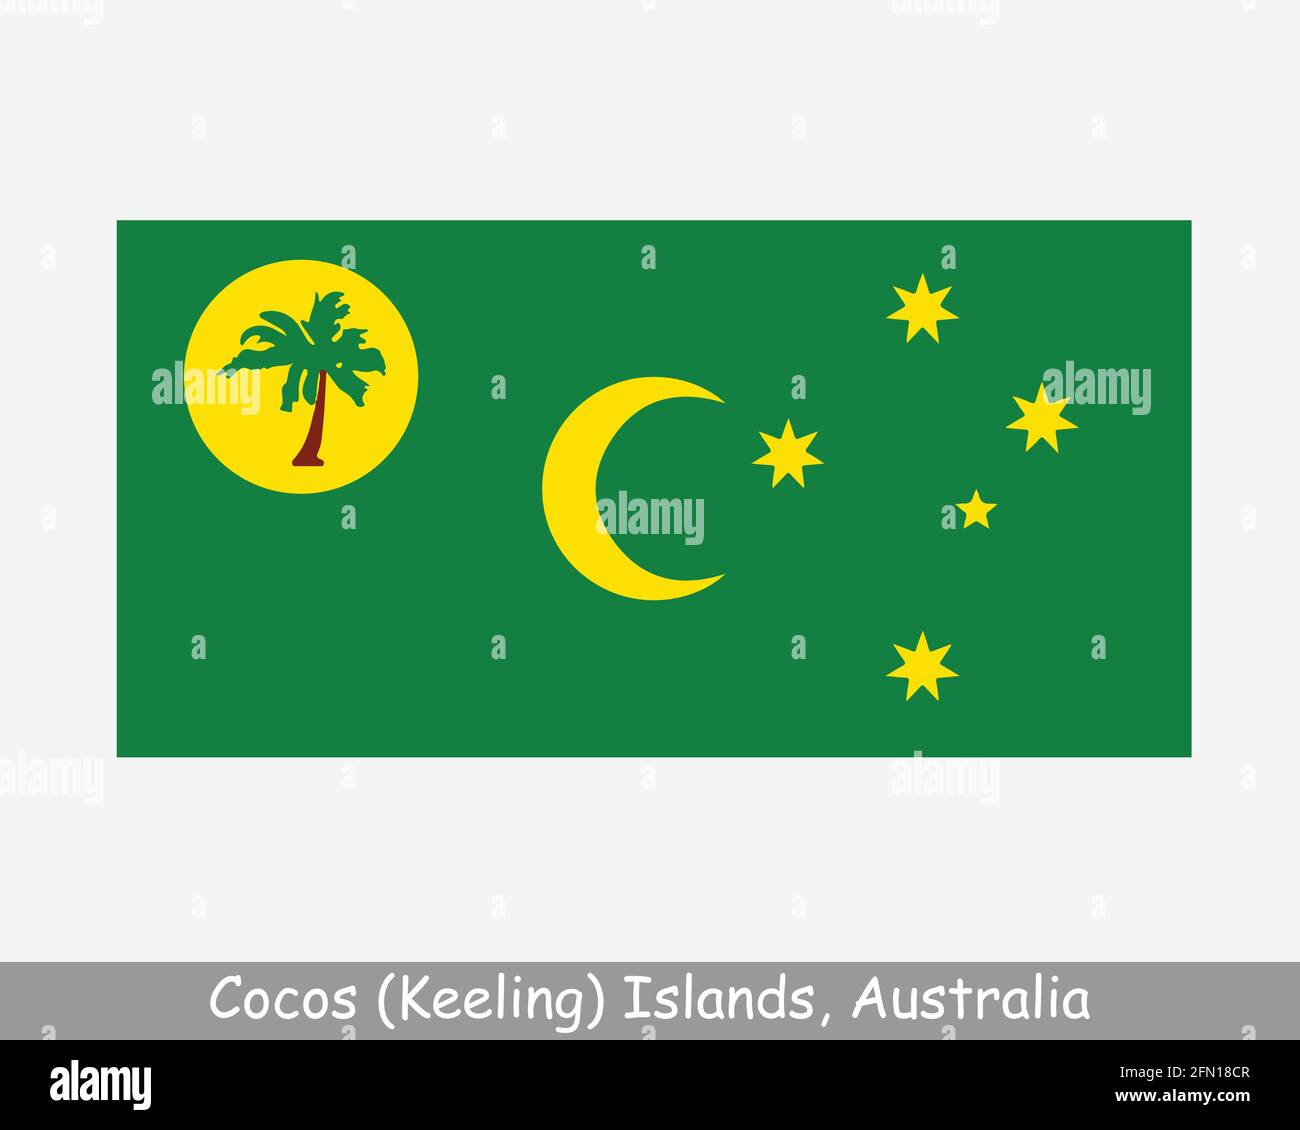 Drapeau des îles Cocos (Keeling). Territoire australien de l'océan Indien, territoire externe de l'Australie. Fichier de découpe d'illustration de vecteur EPS Illustration de Vecteur